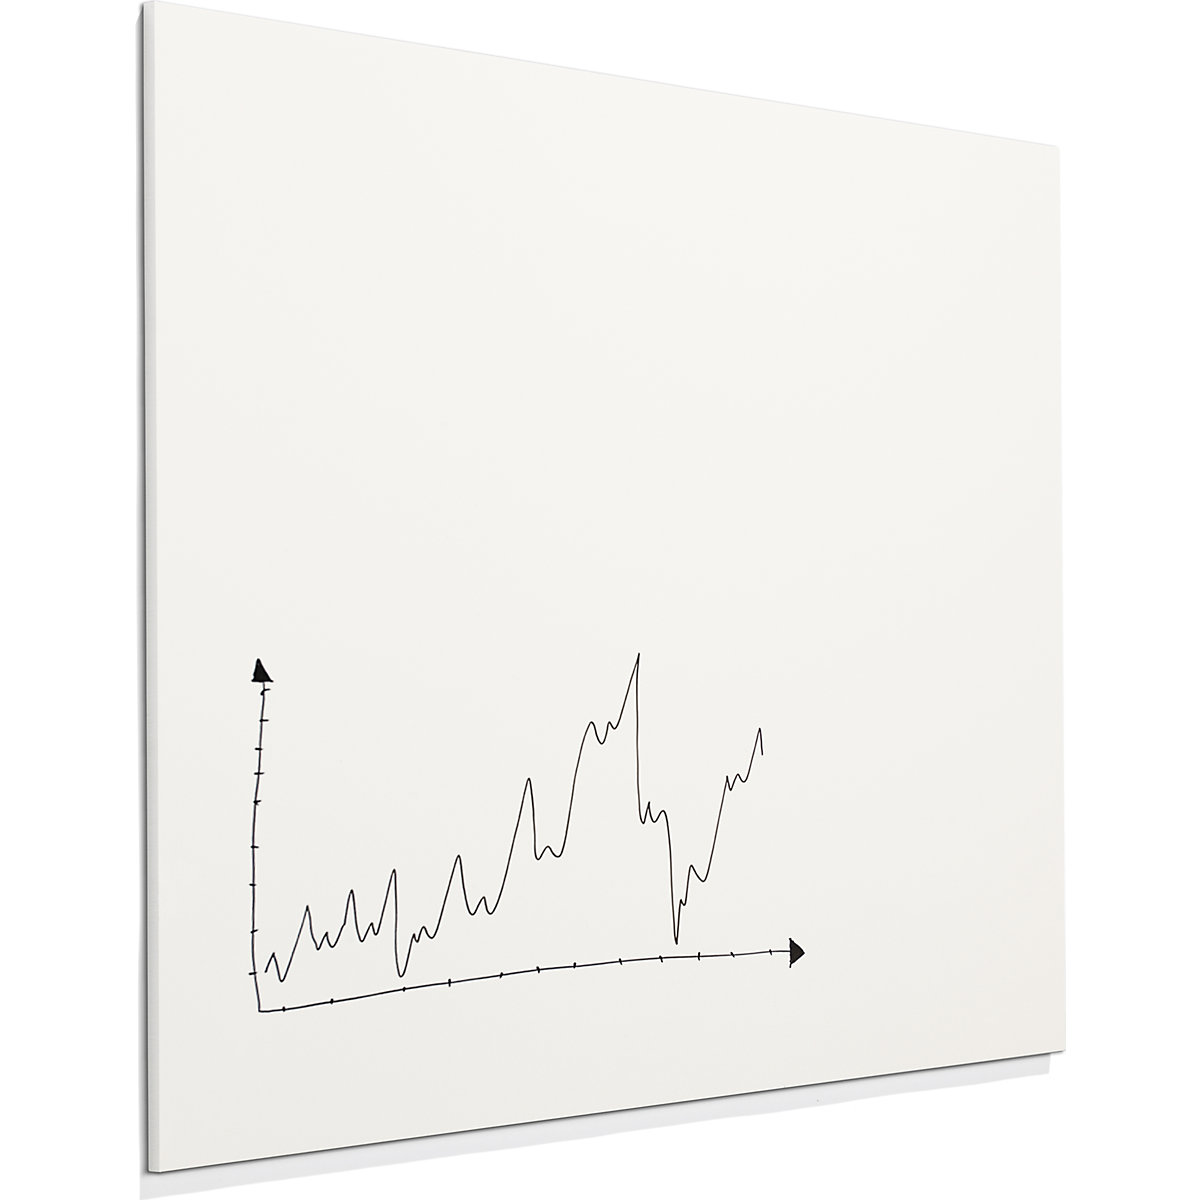 SHARP whiteboard – Chameleon (Product illustration 8)-7